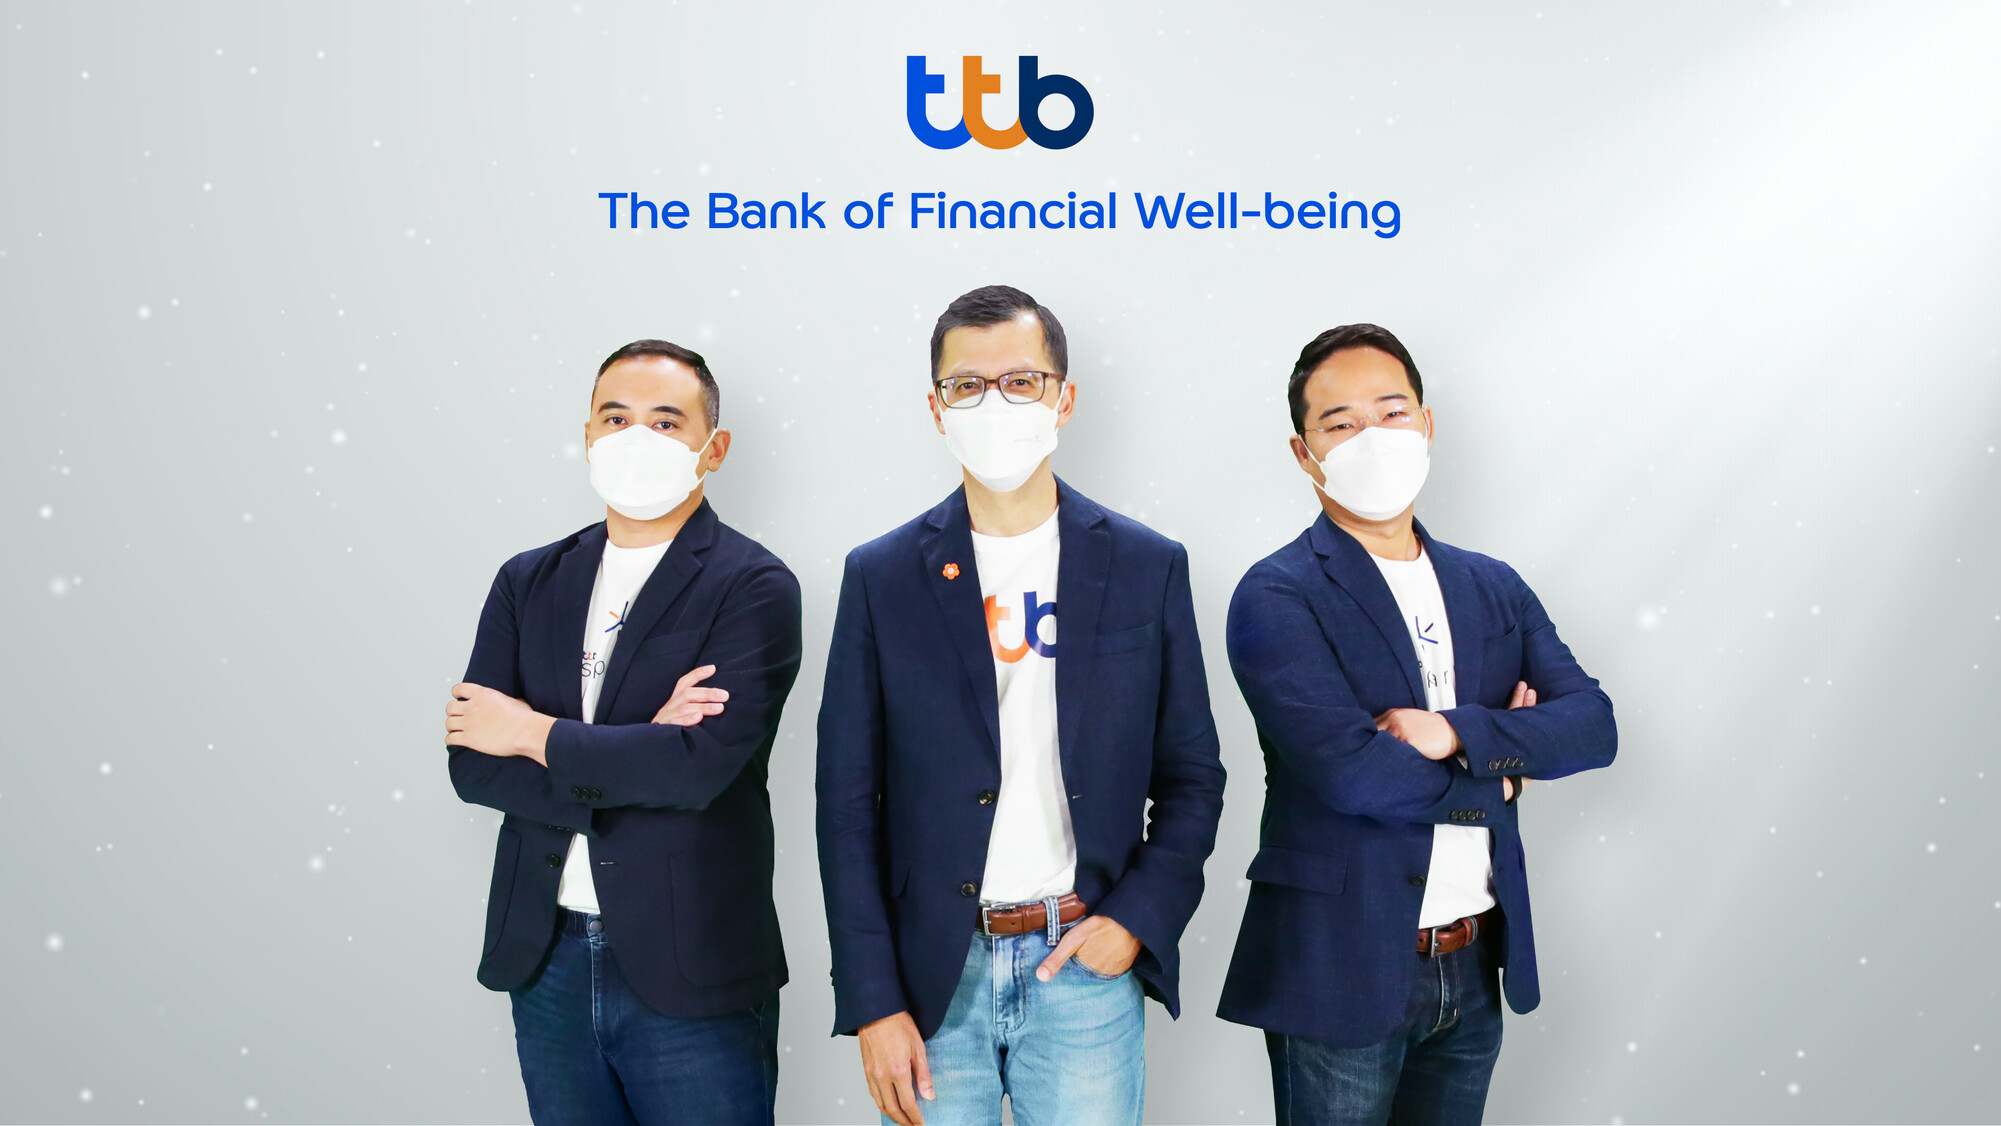 ทีเอ็มบีธนชาต แถลงกลยุทธ์ปี 2565 ภายใต้แนวคิด 'The Bank of Financial Well-being'